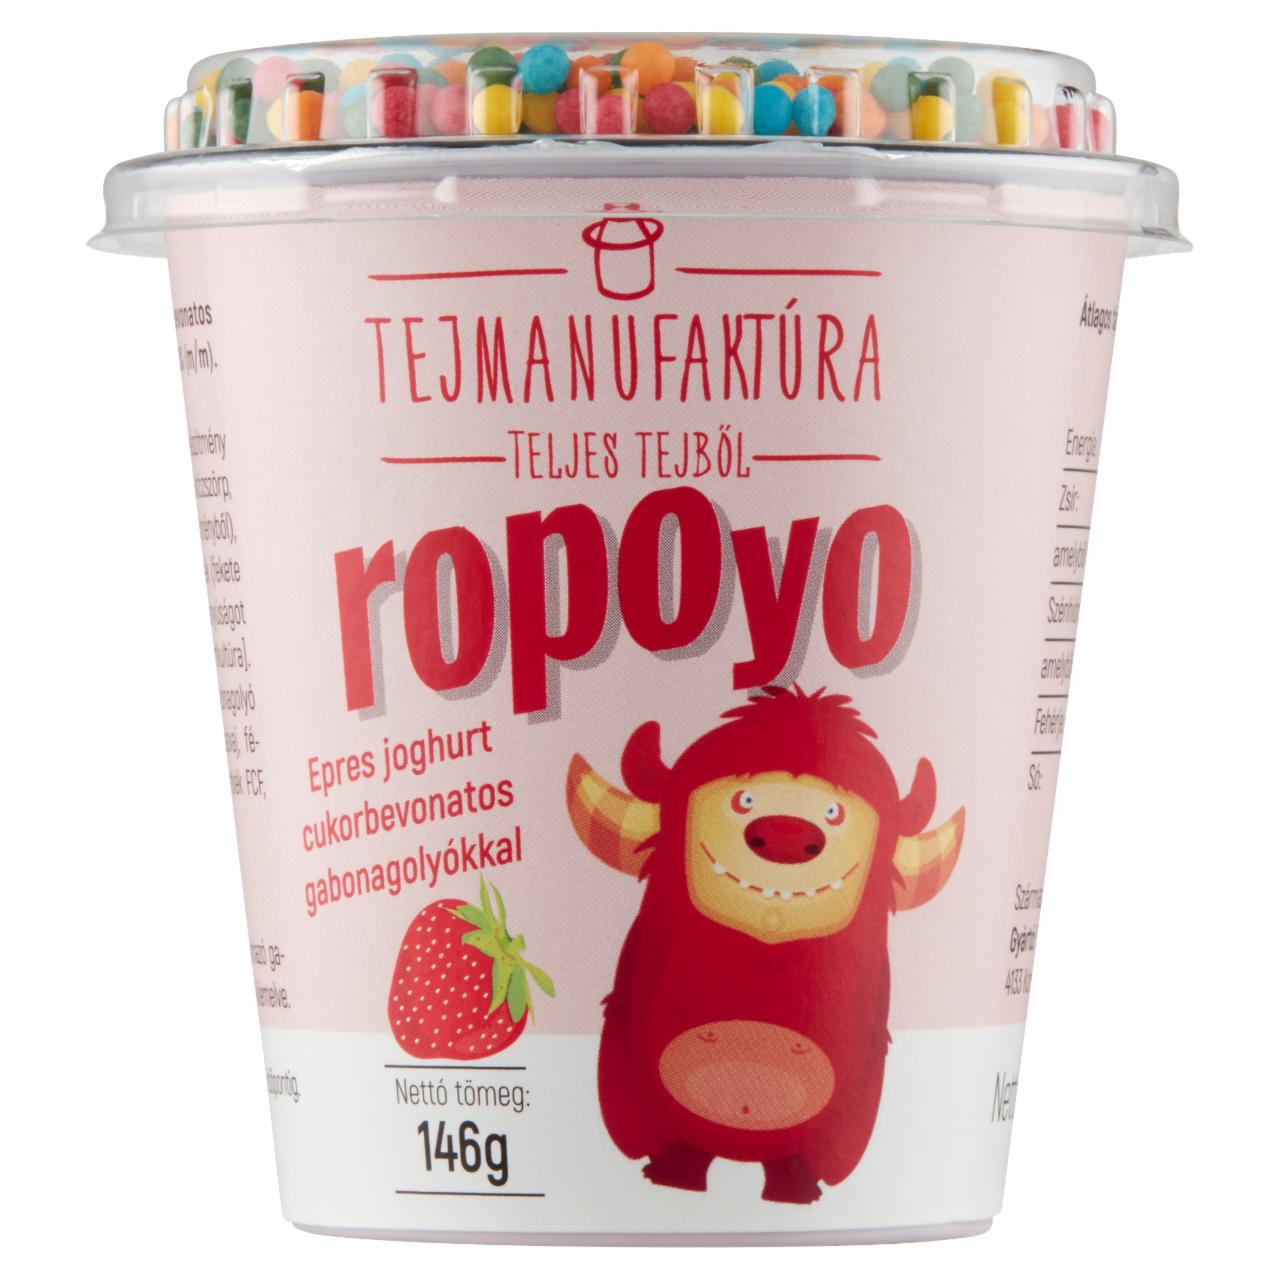 Képek - Tejmanufaktúra Ropoyo epres joghurt cukorbevonatos gabonagolyókkal 146 g